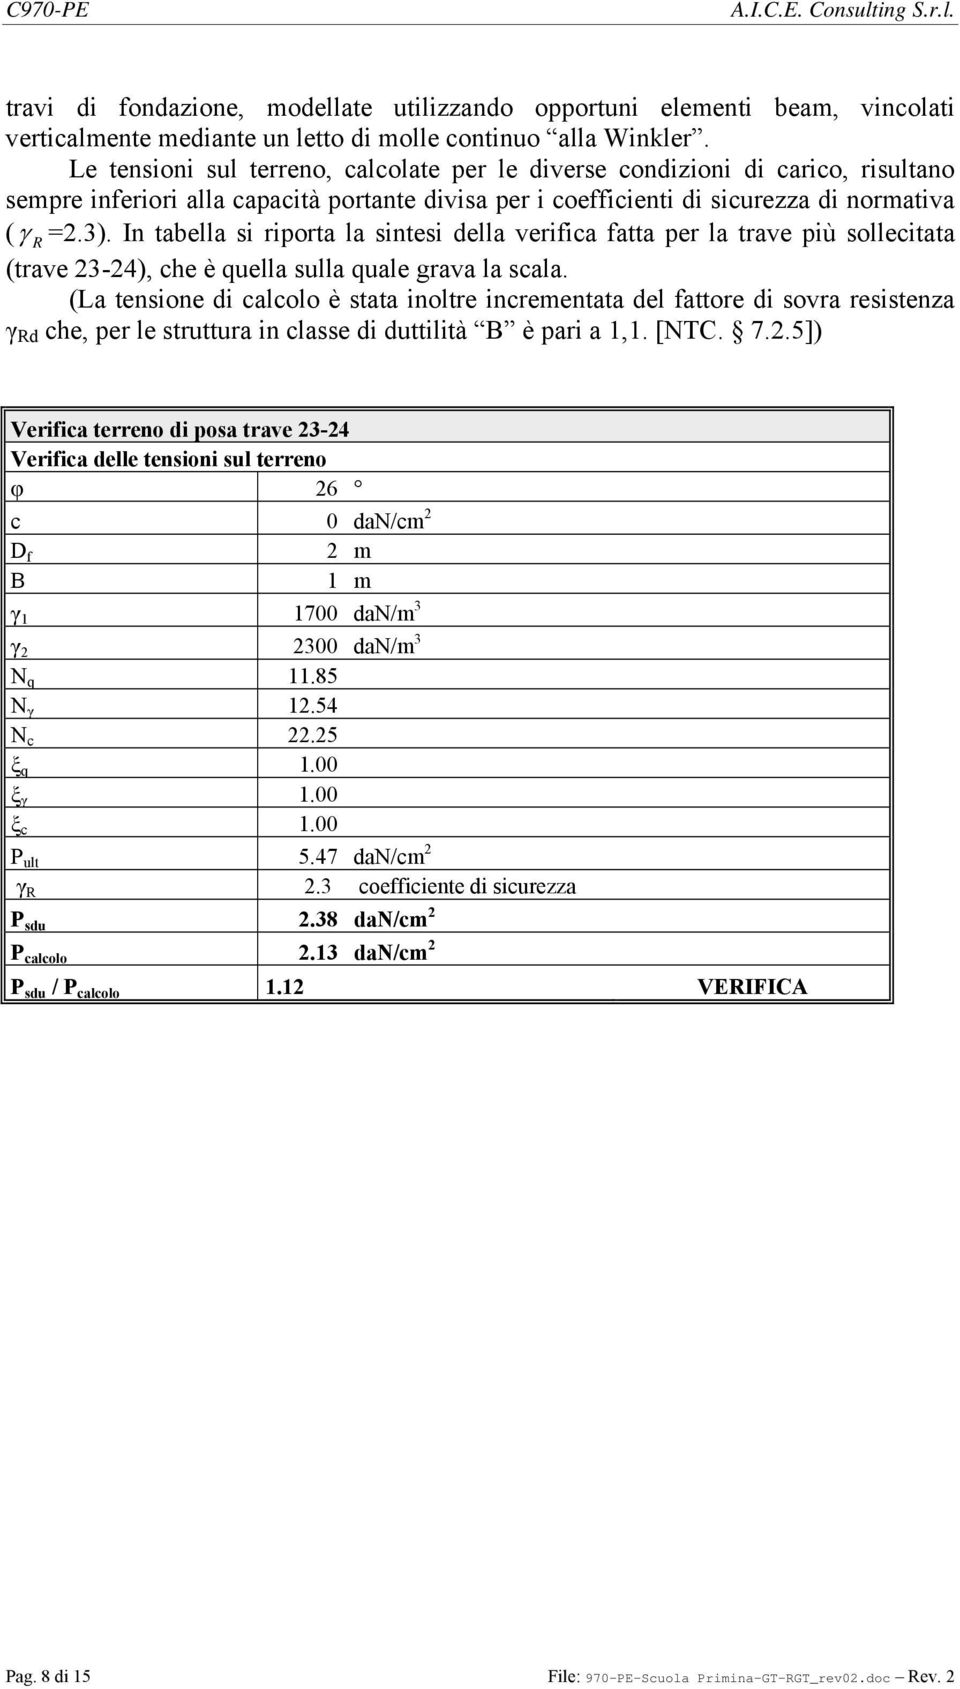 In tabella si riporta la sintesi della verifica fatta per la trave più sollecitata (trave -4), che è quella sulla quale grava la scala.